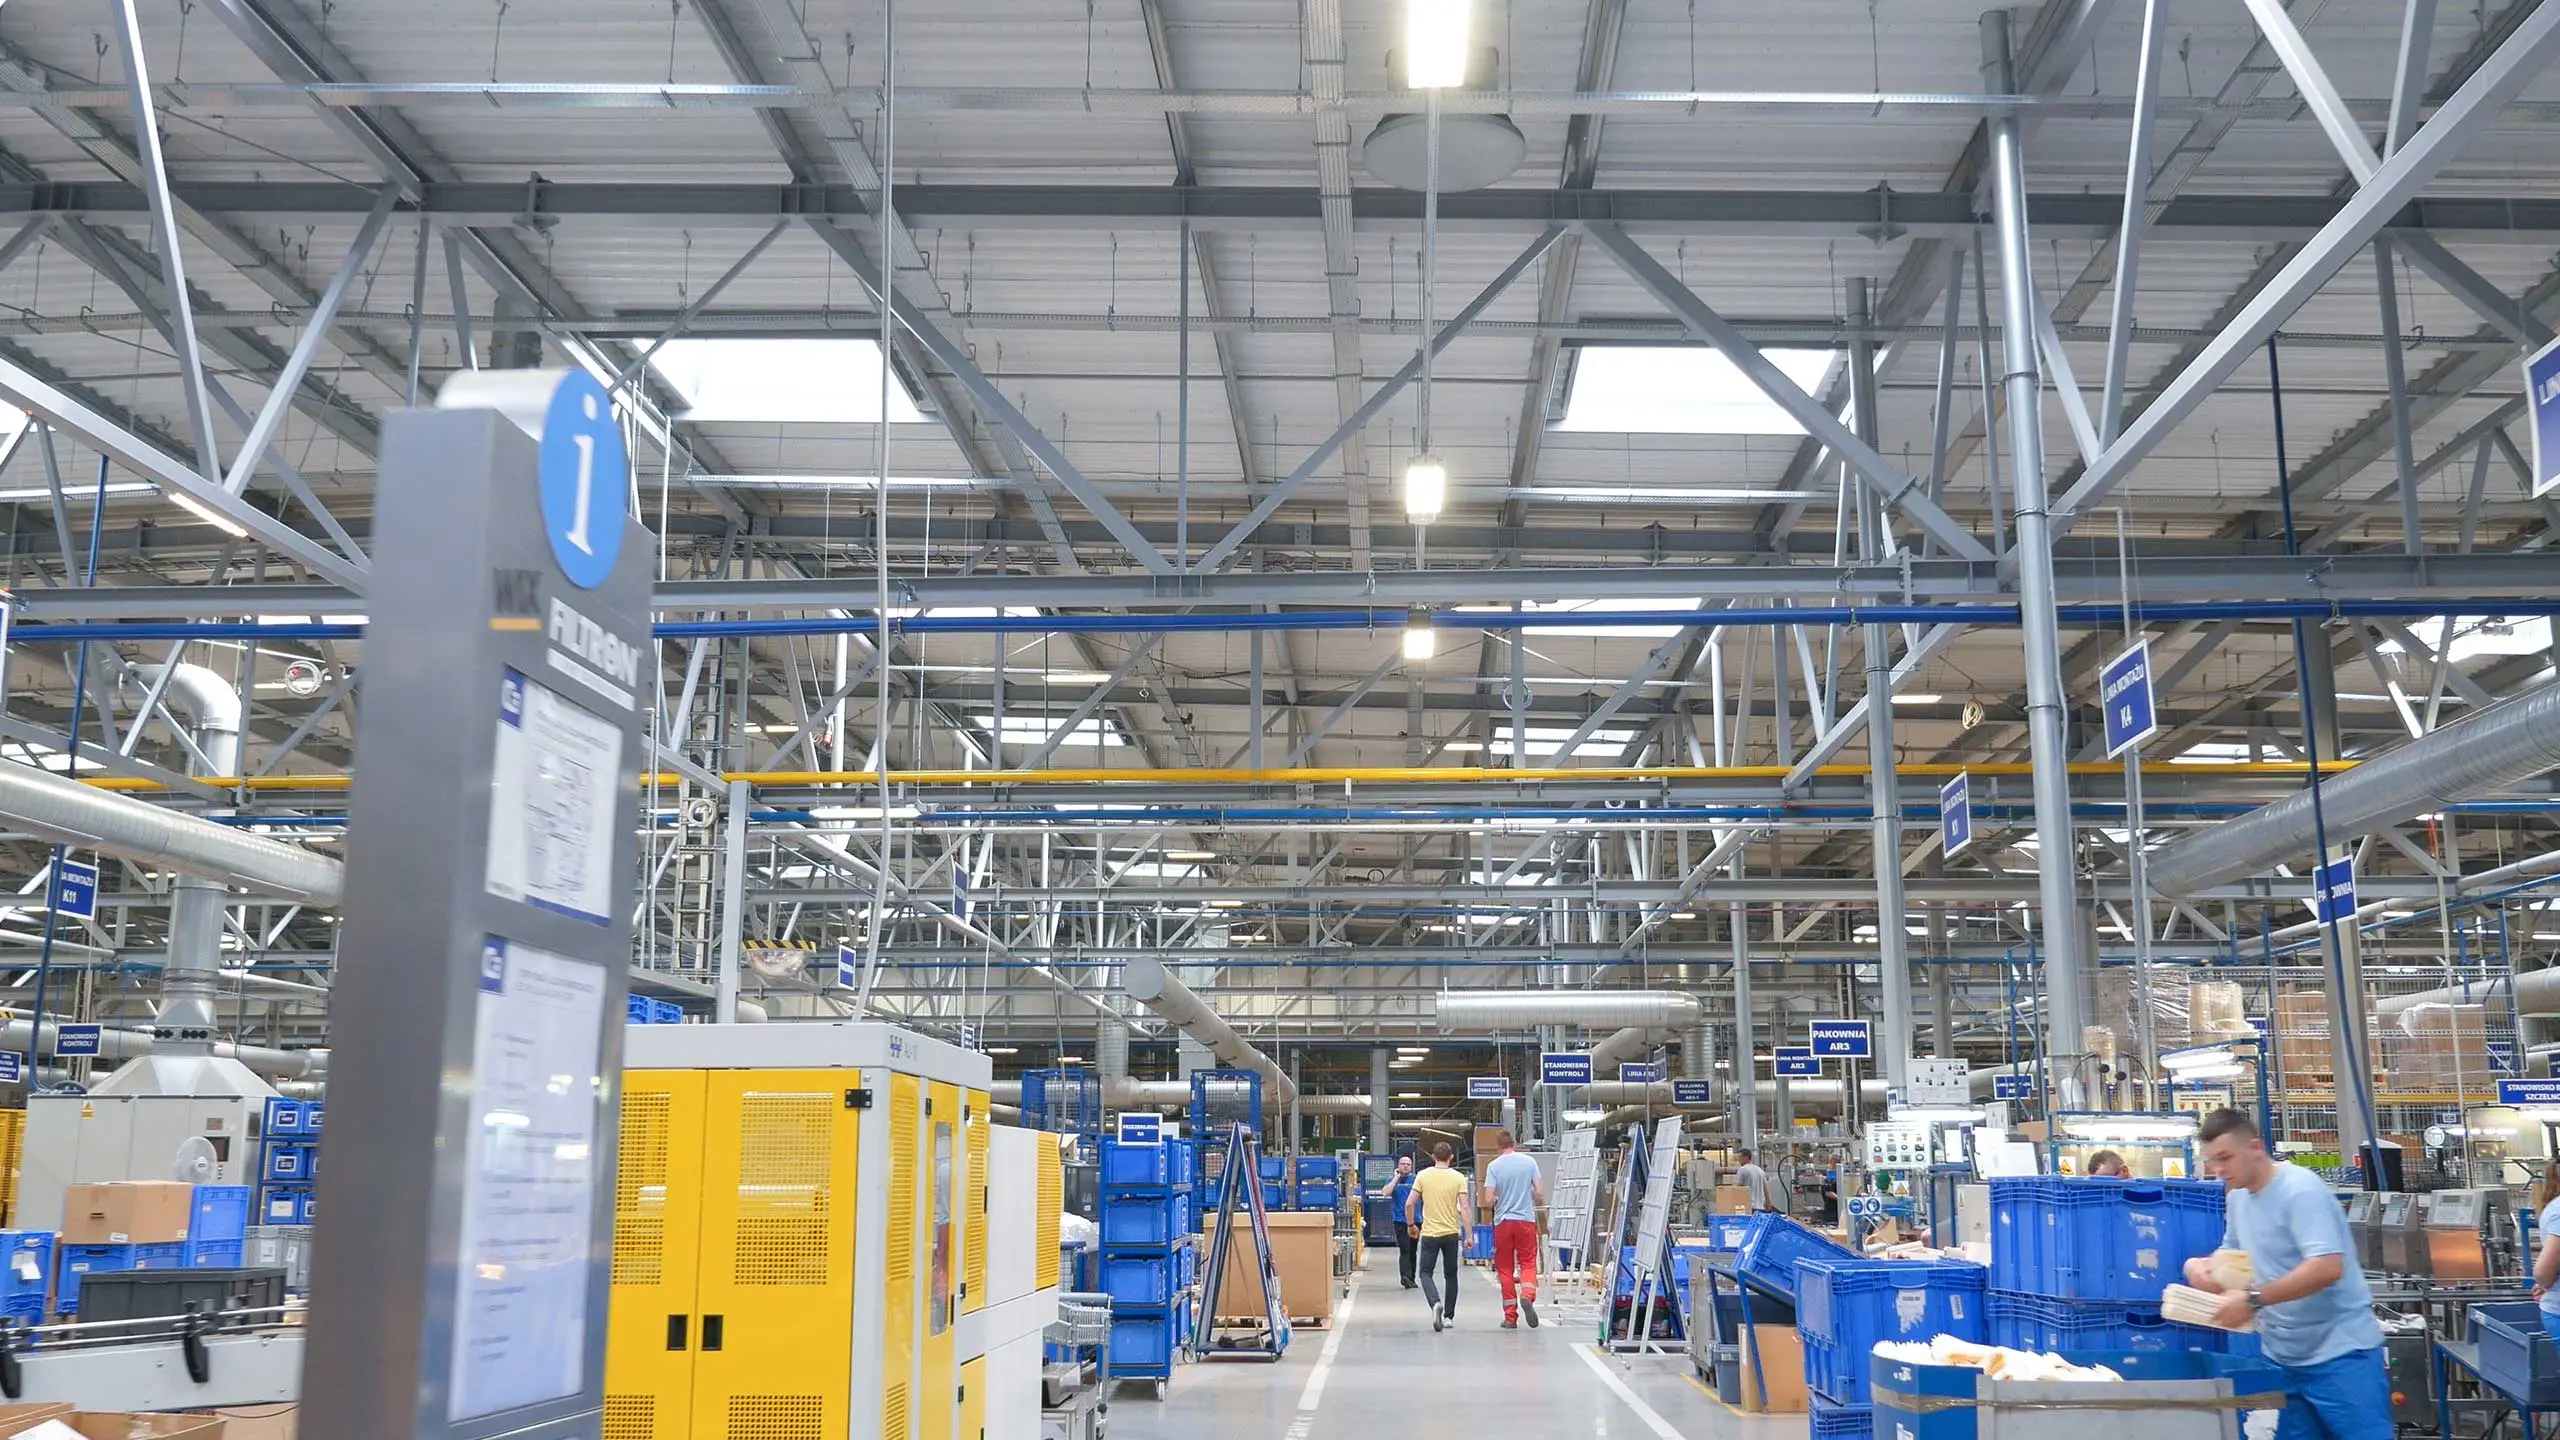 Ezen a képen egy ipari üzem látható led világítással felszerelve.